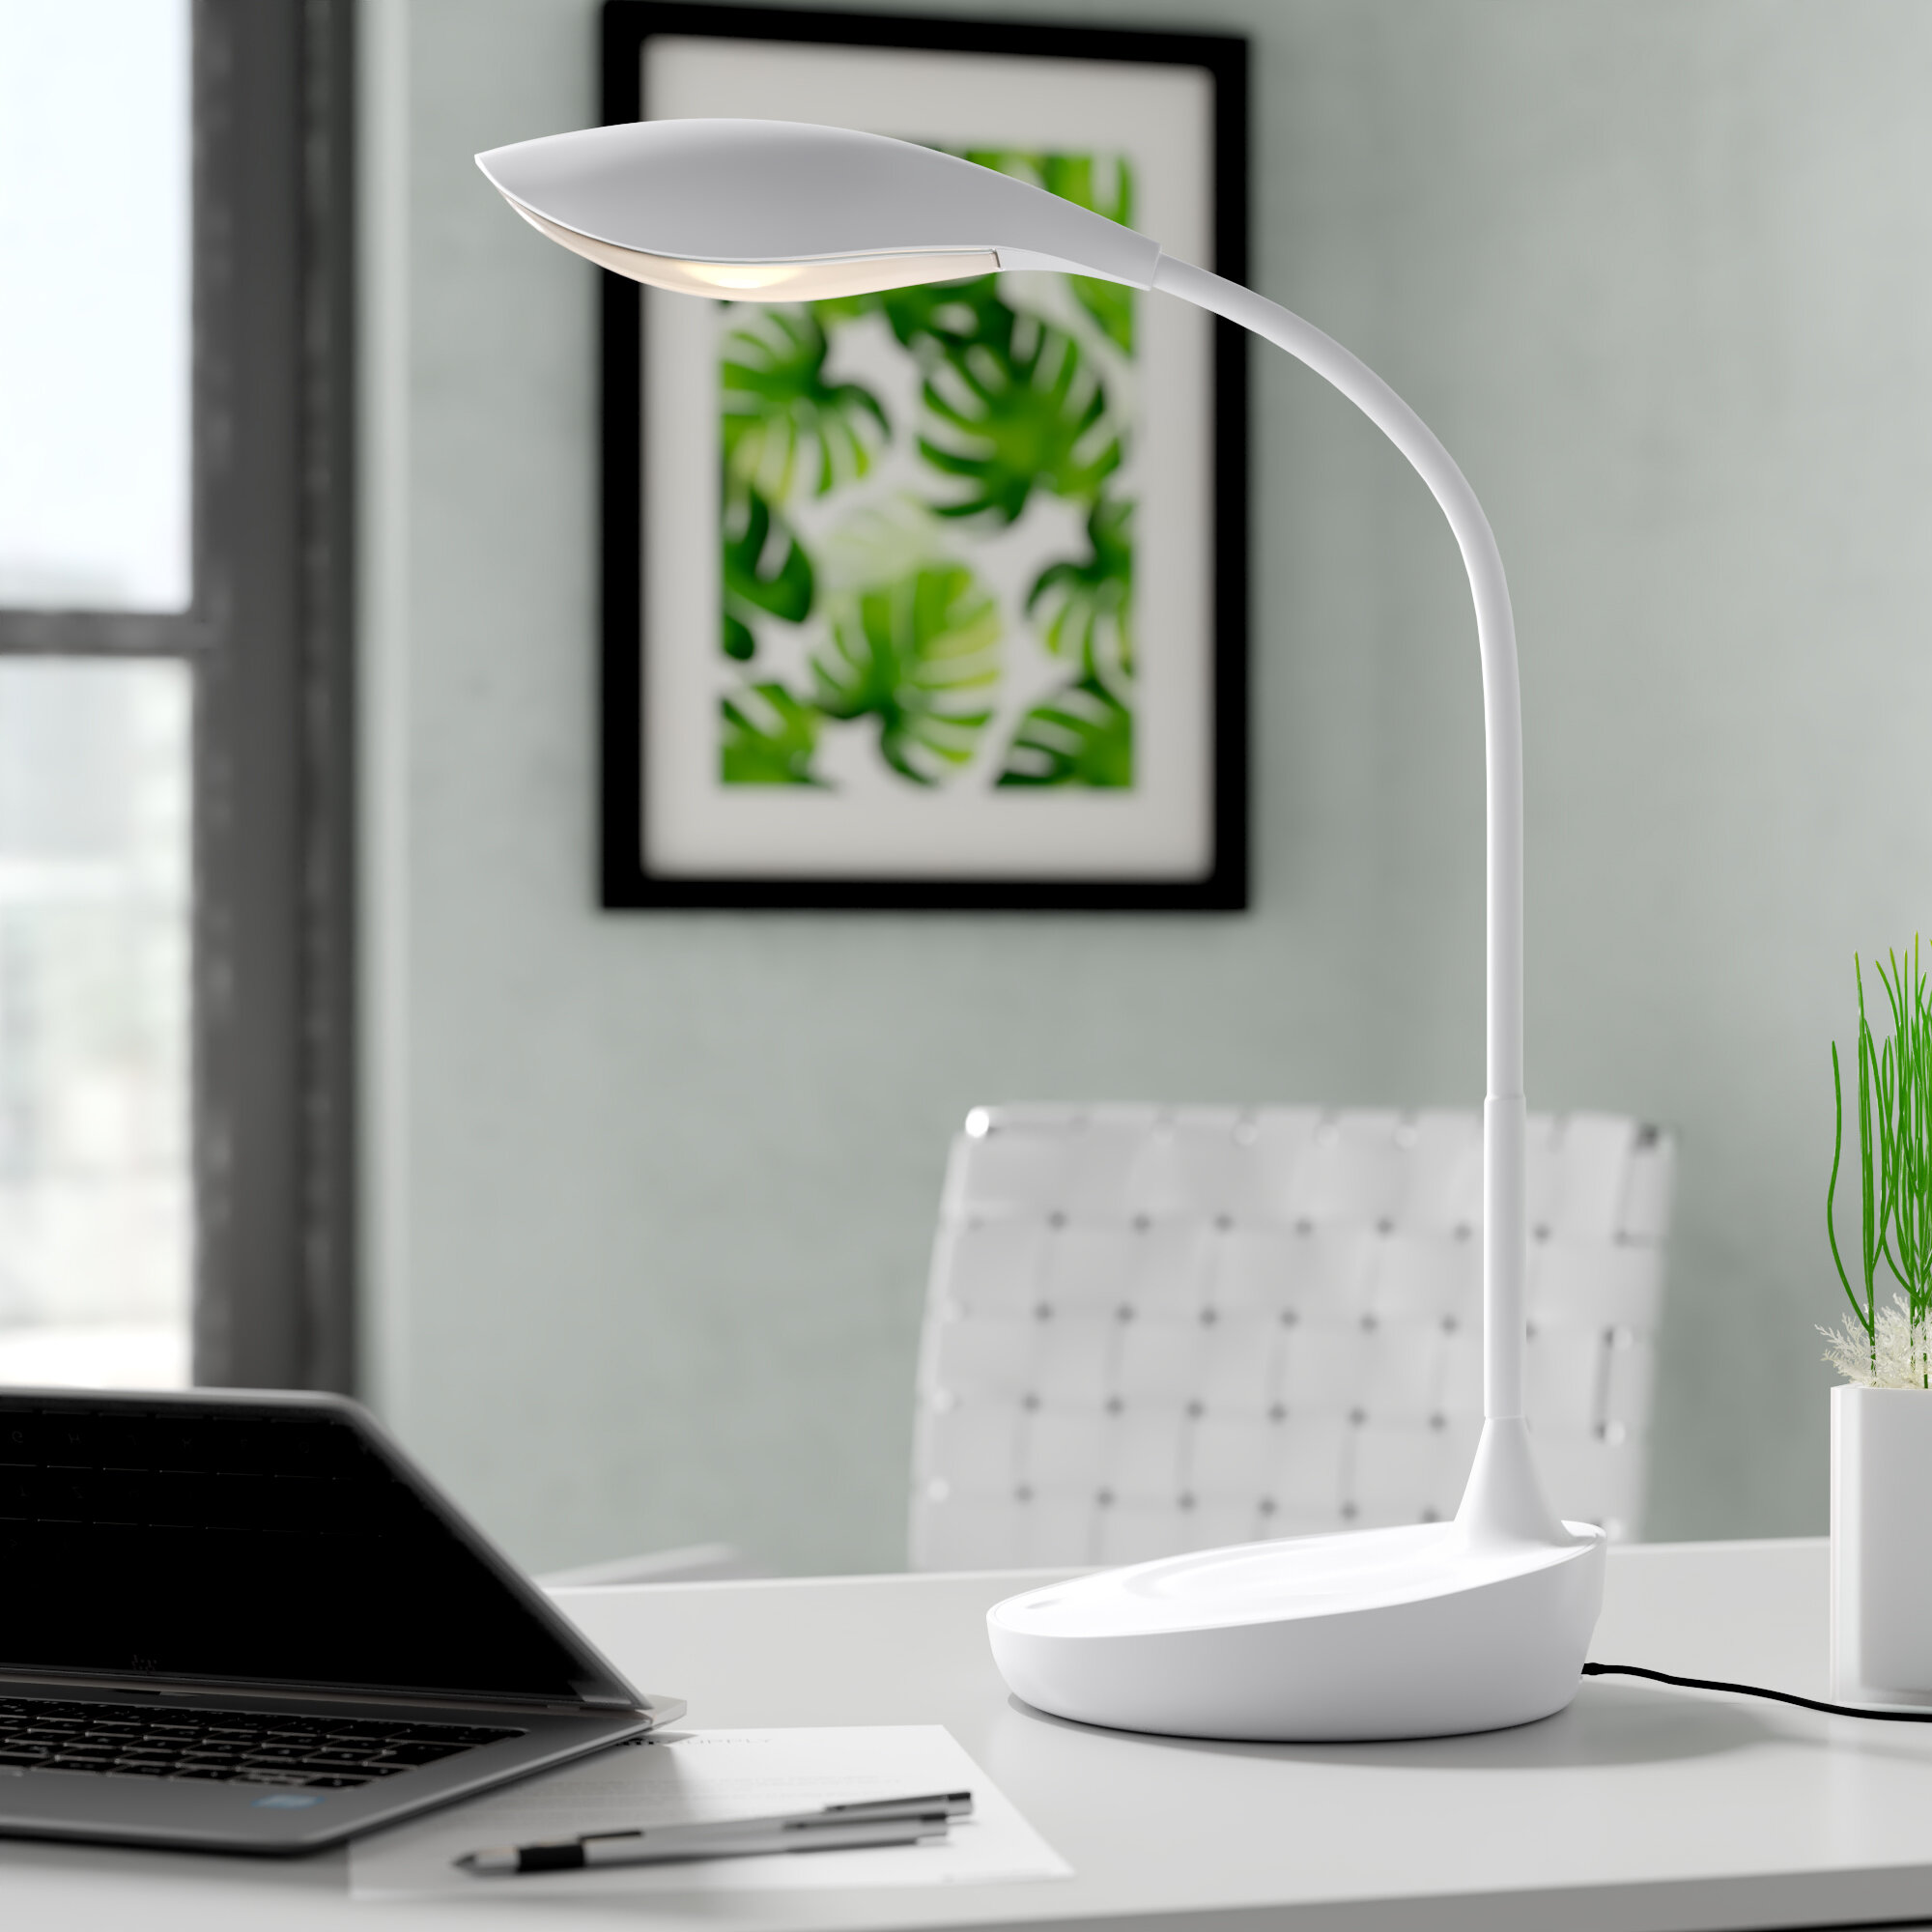 LED Mini Table Lamps You'll Love